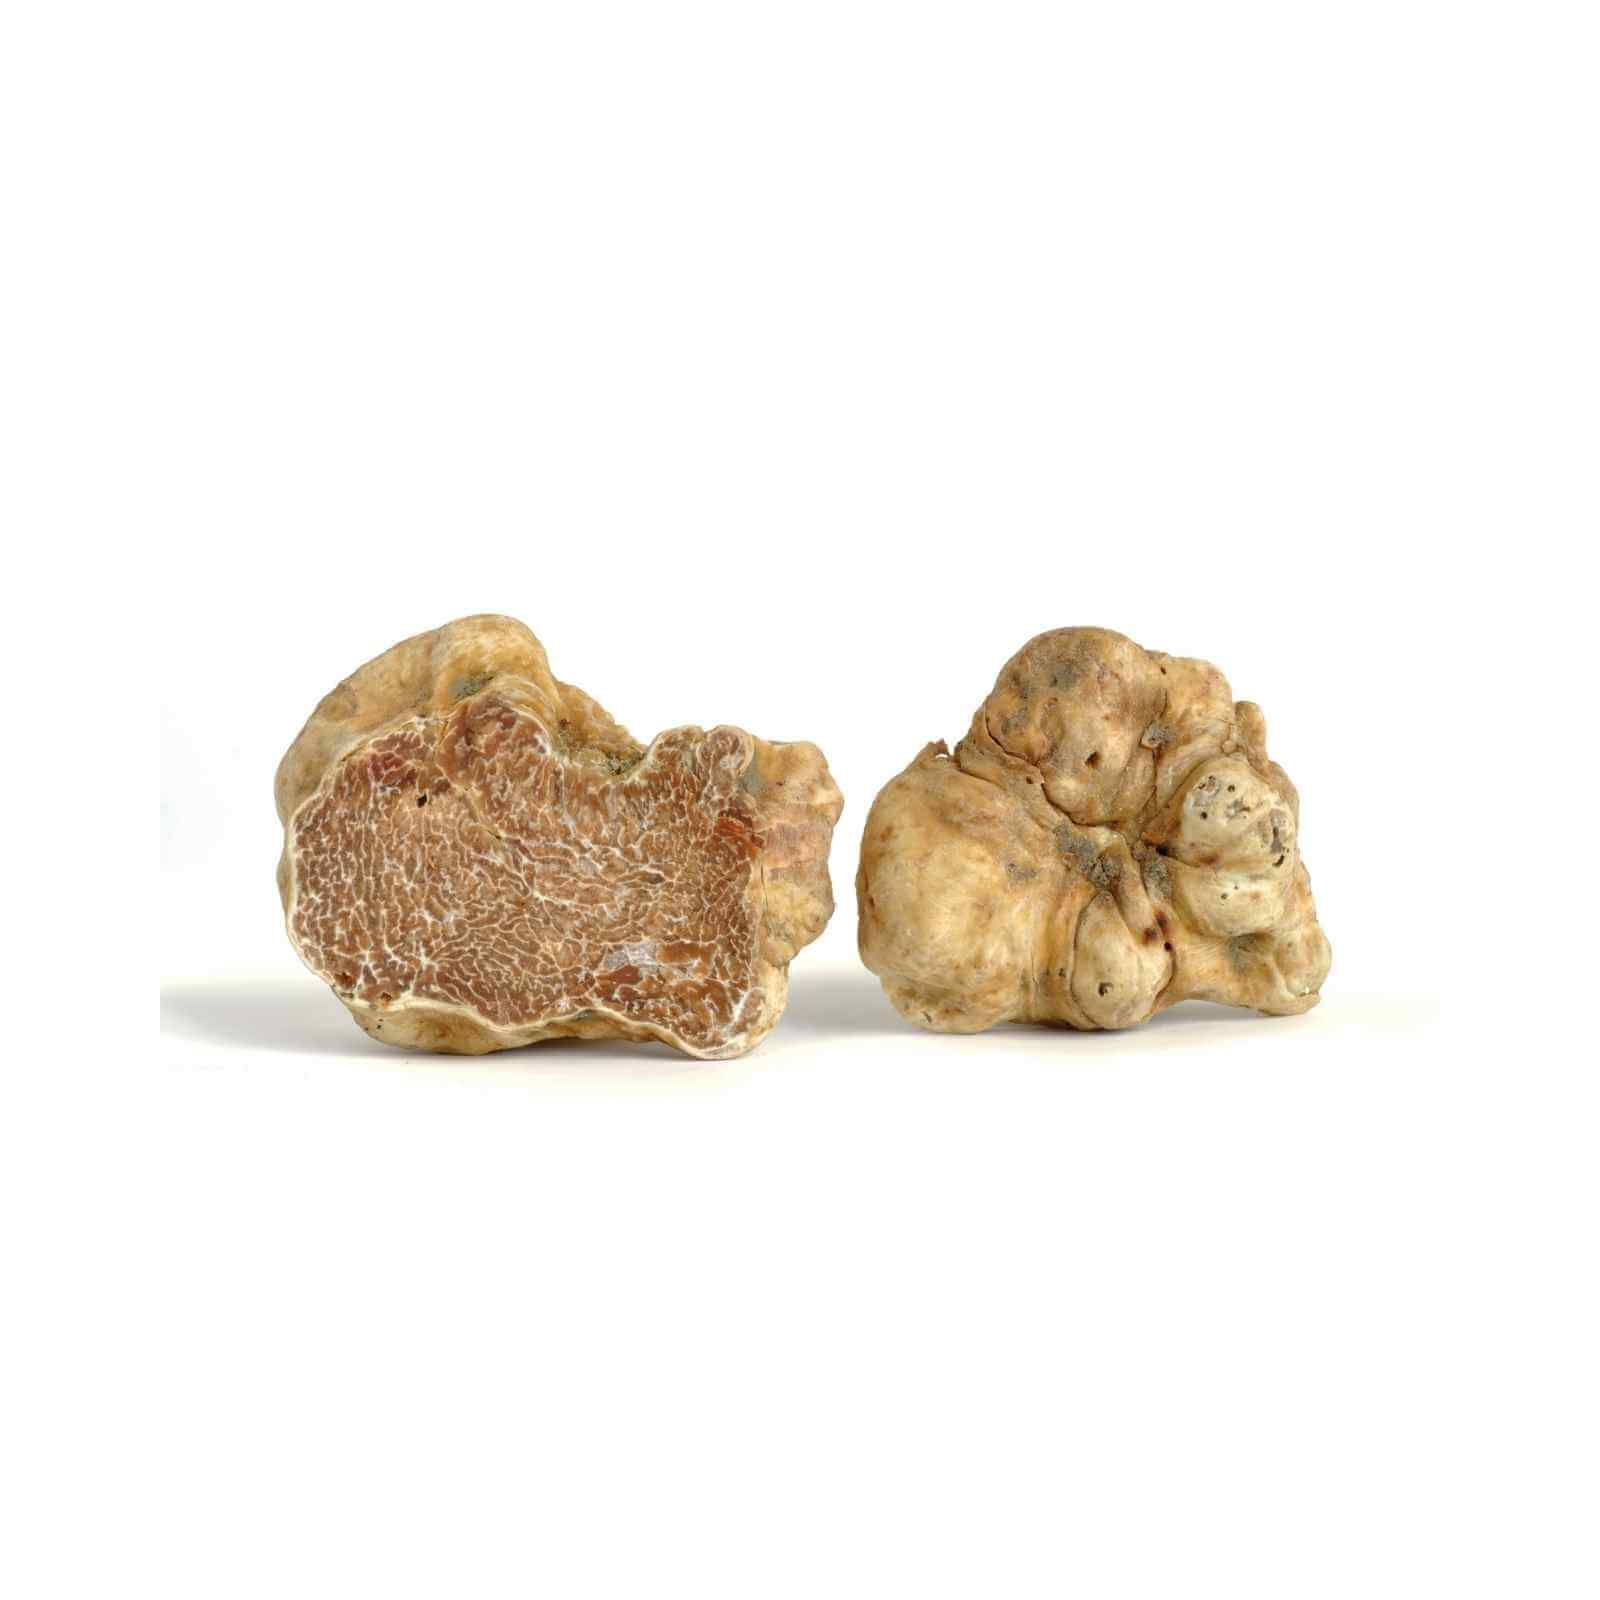 Alba White Truffles For Sale- Buy Gourmet Fresh White Truffles Online